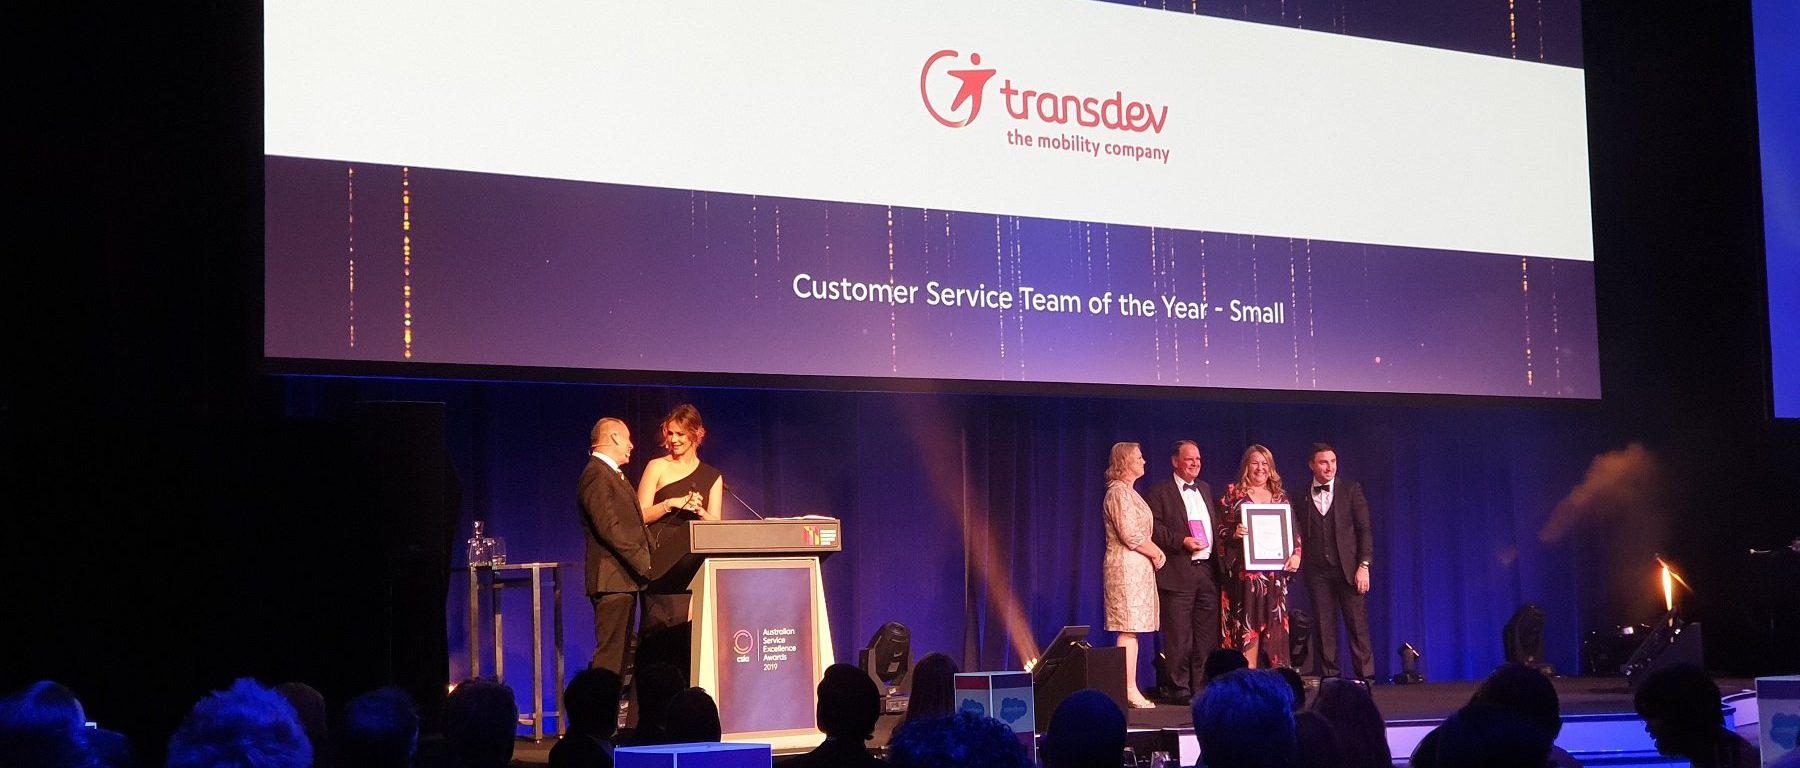 Image of Transdev Sydney team receiving customer service award